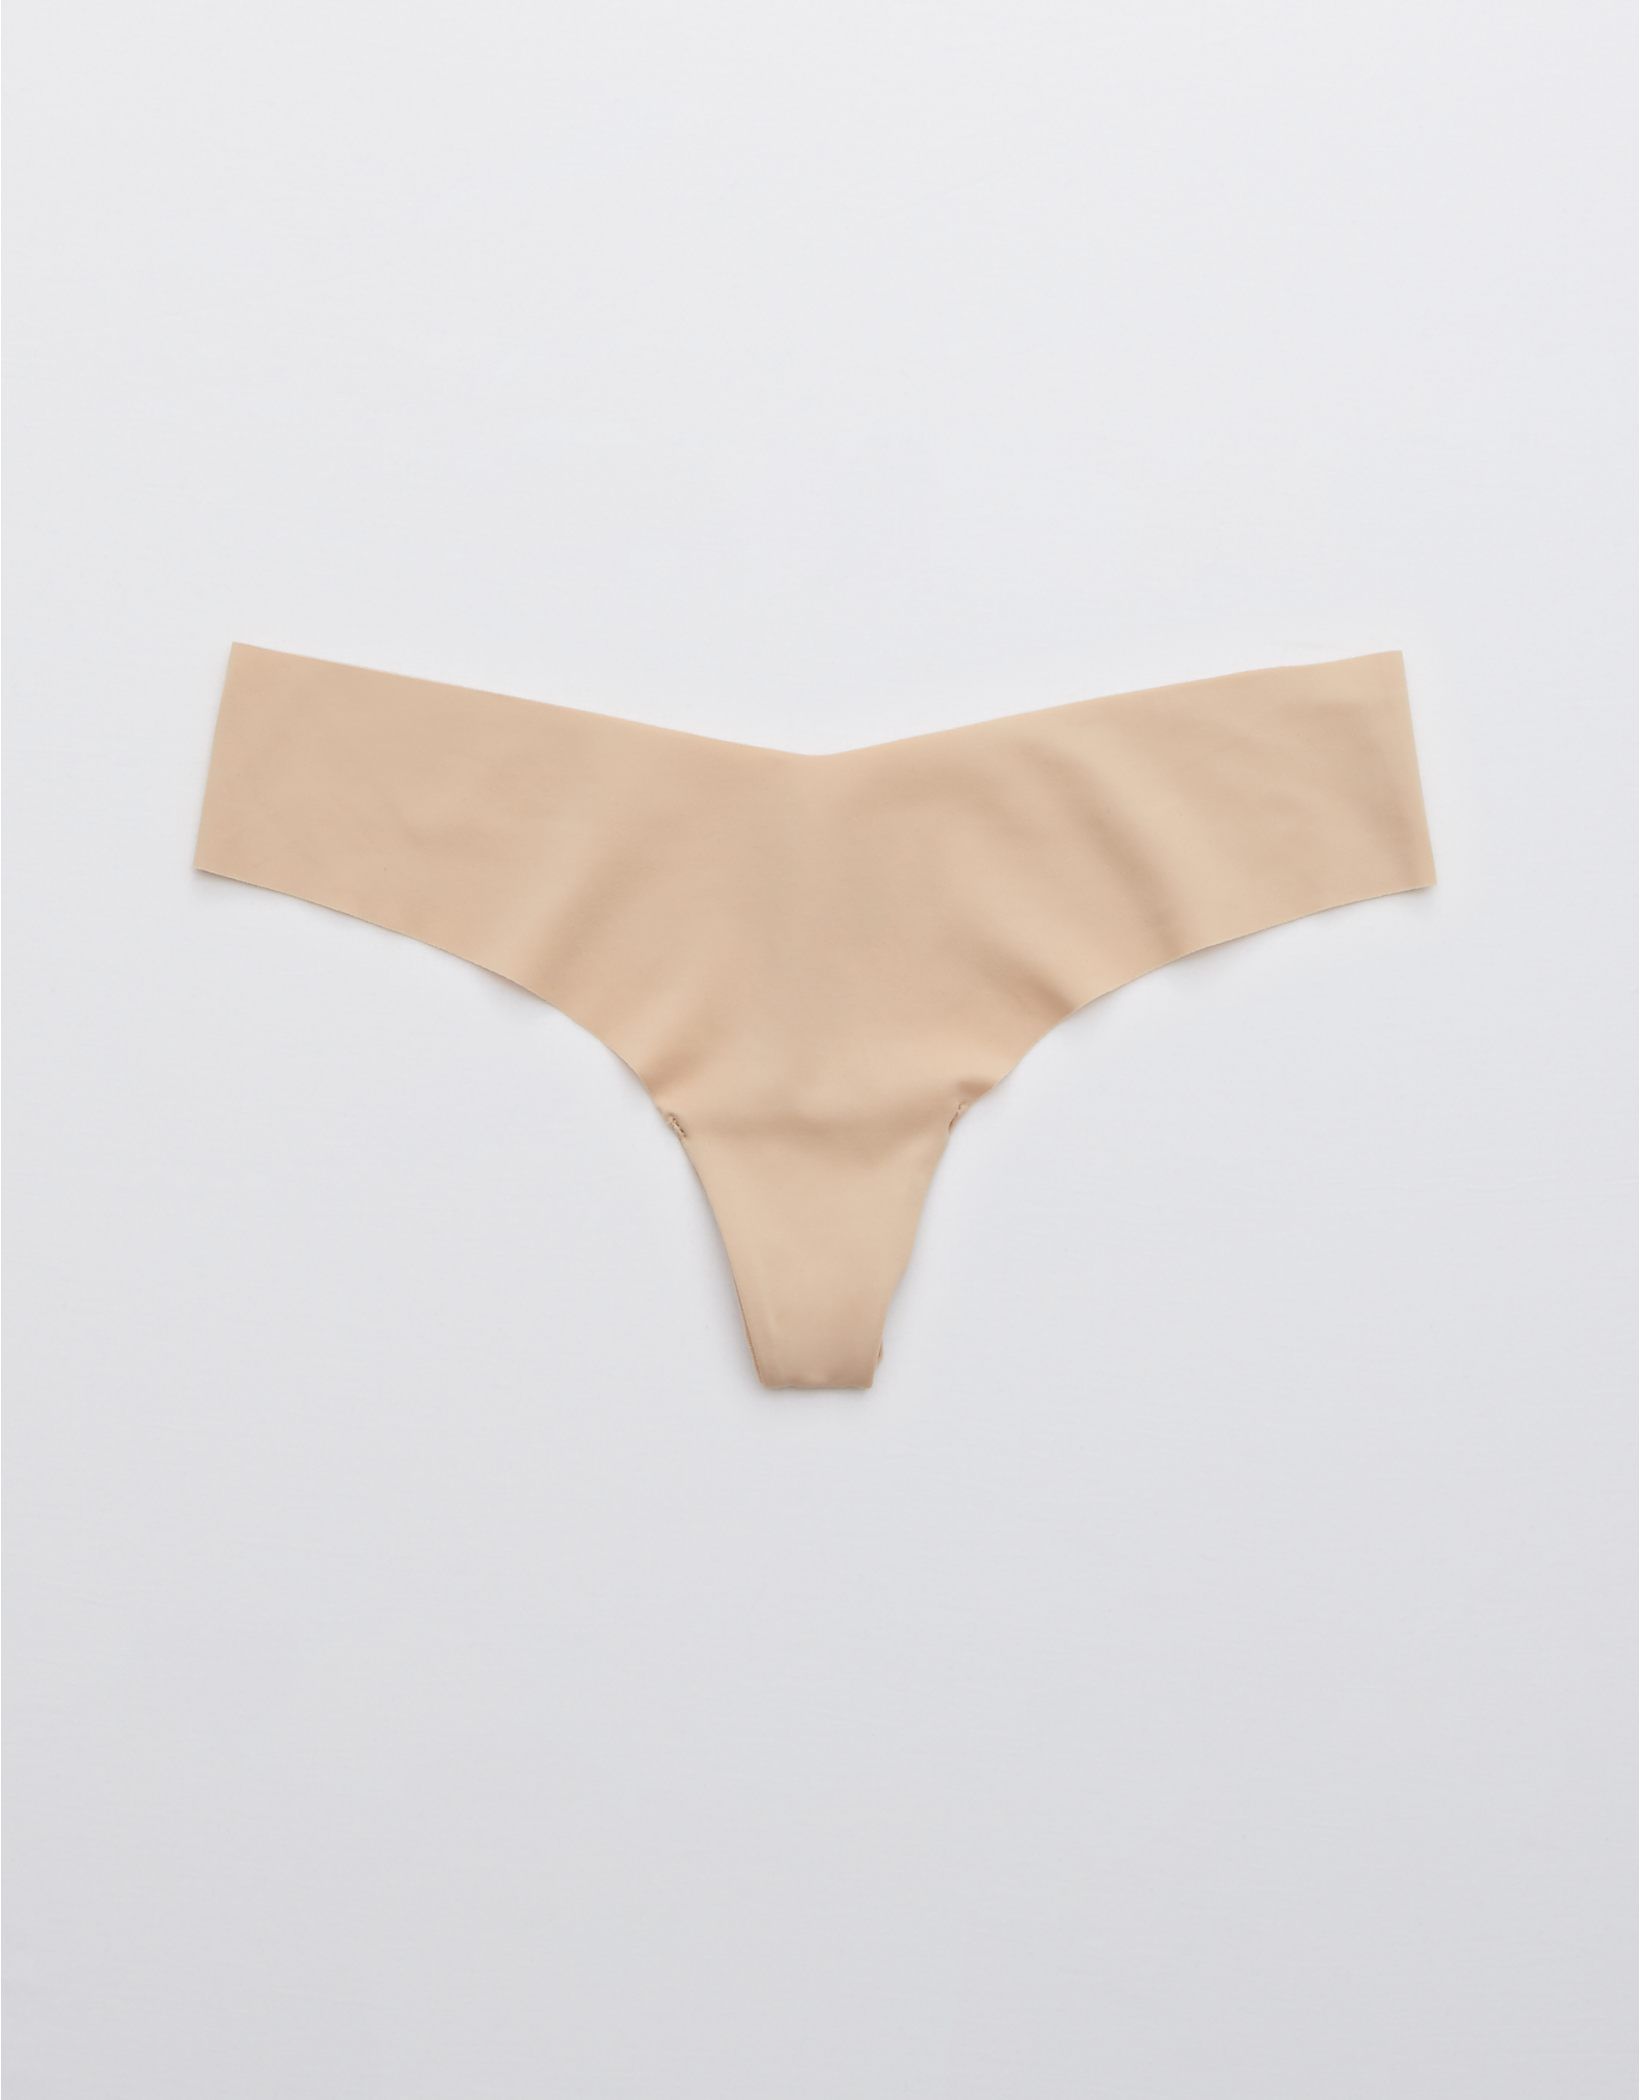 Aerie No Show Thong Underwear | Aerie